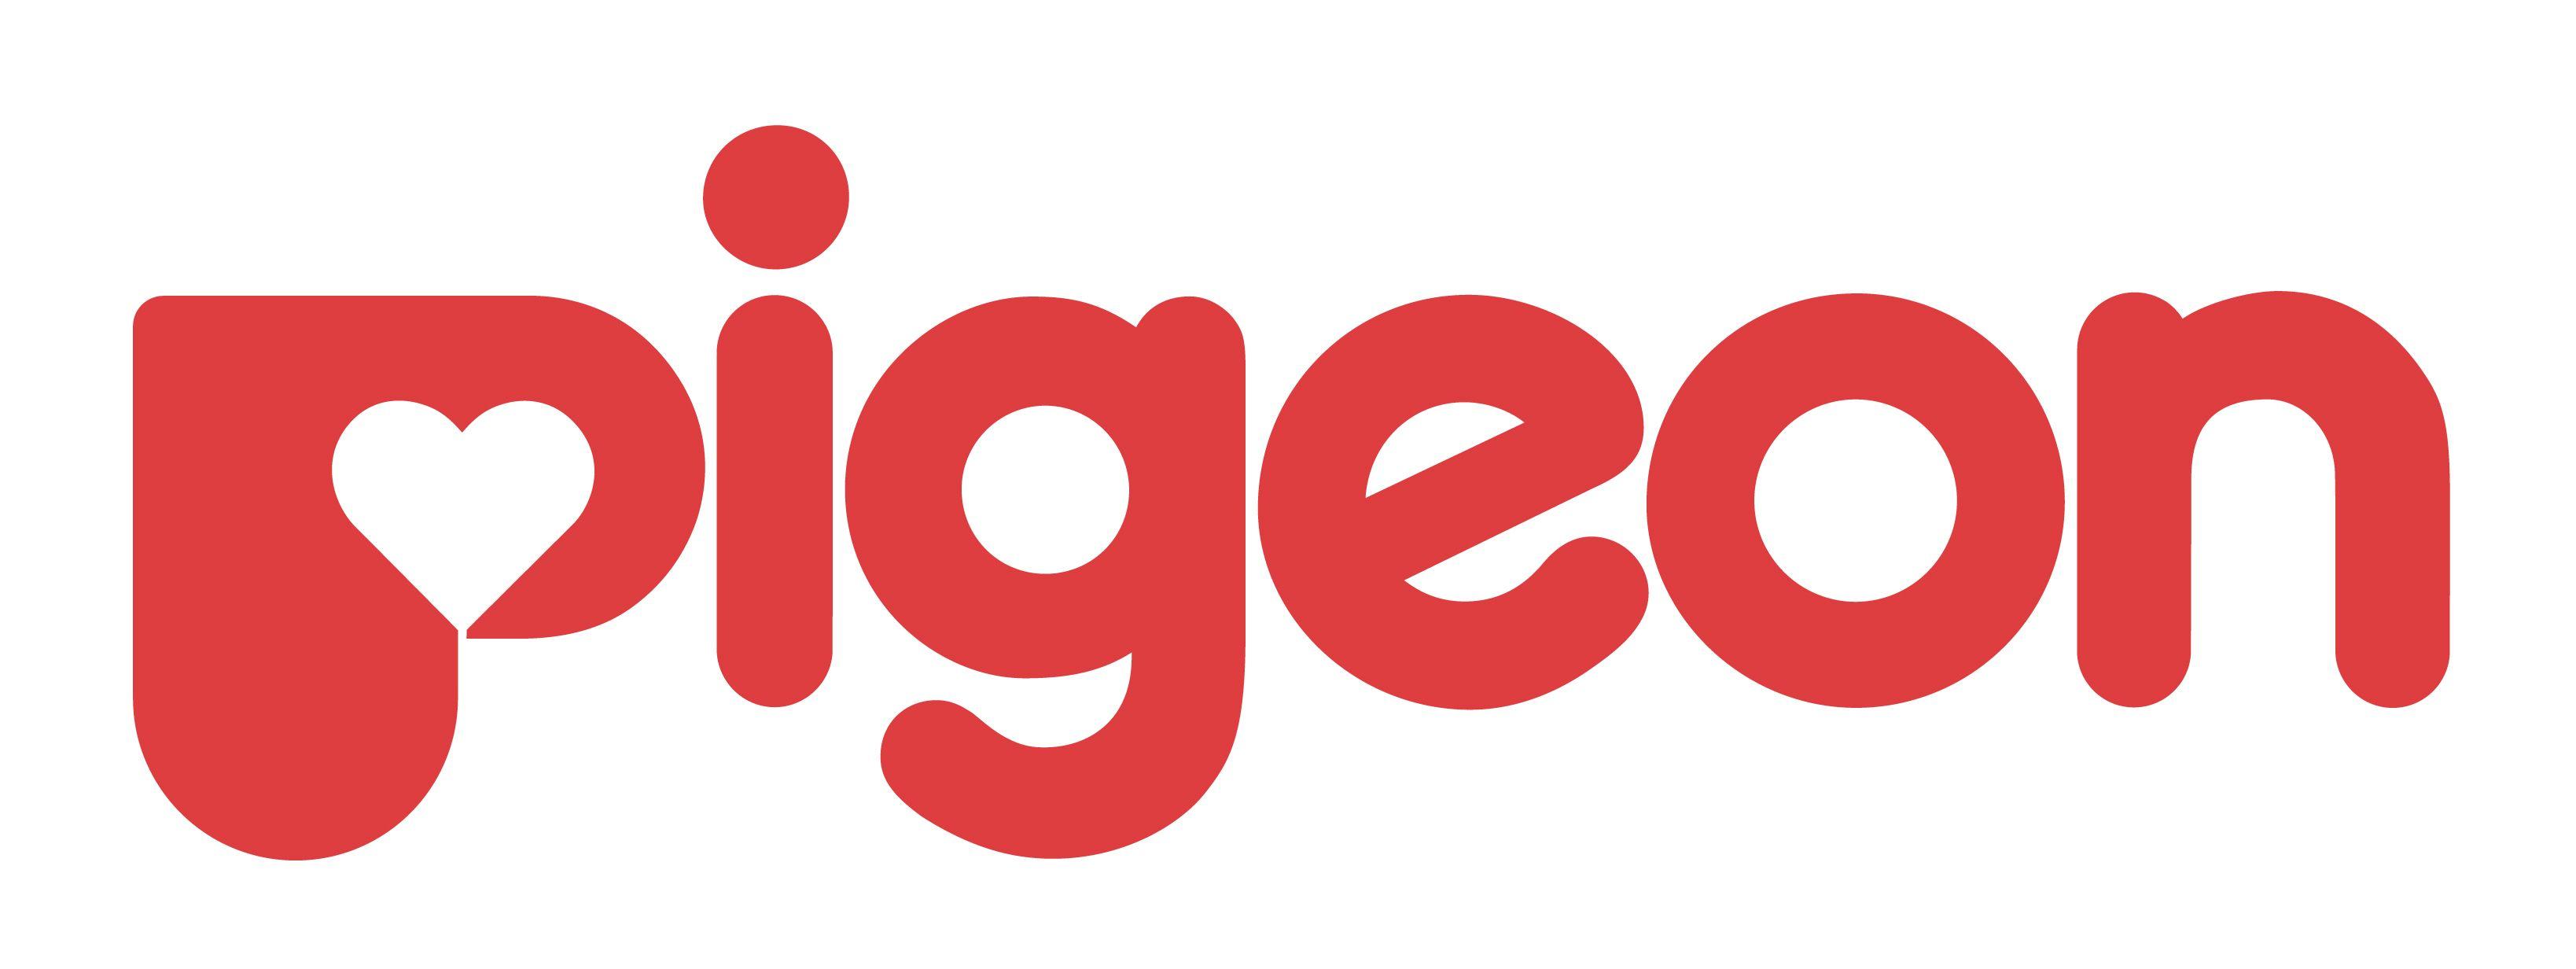 Pigeon Logo - Pigeon Logos